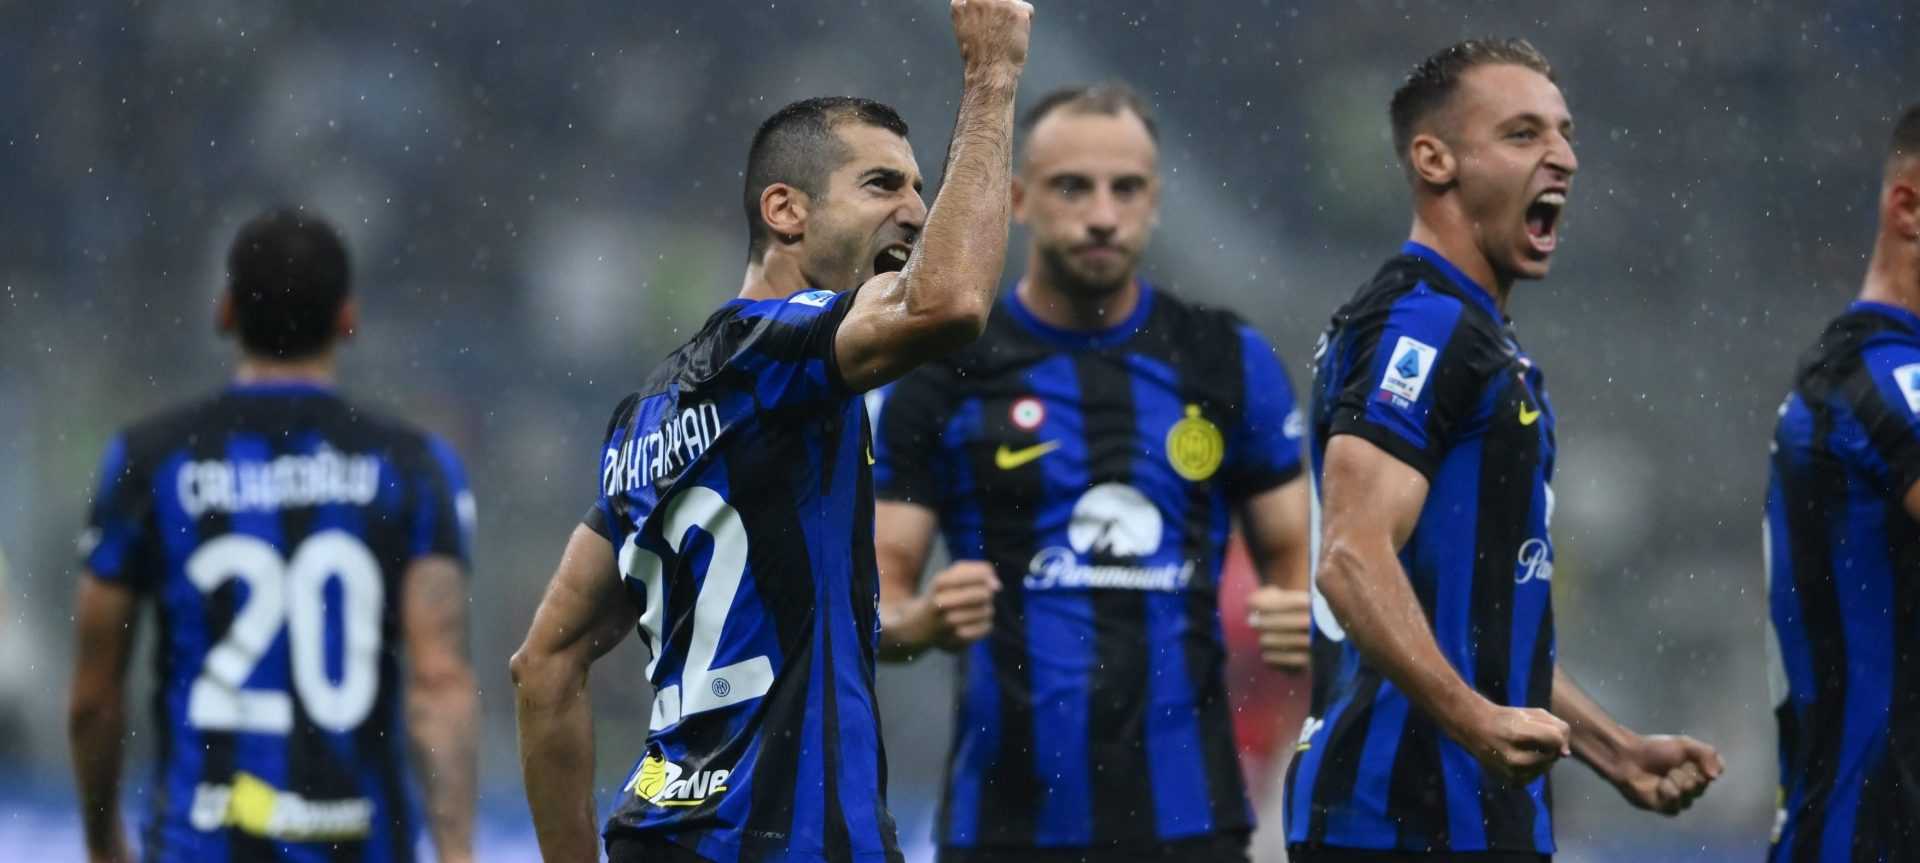 Inter-Milan, ad Inzaghi piace cambiare: la strategia decisiva